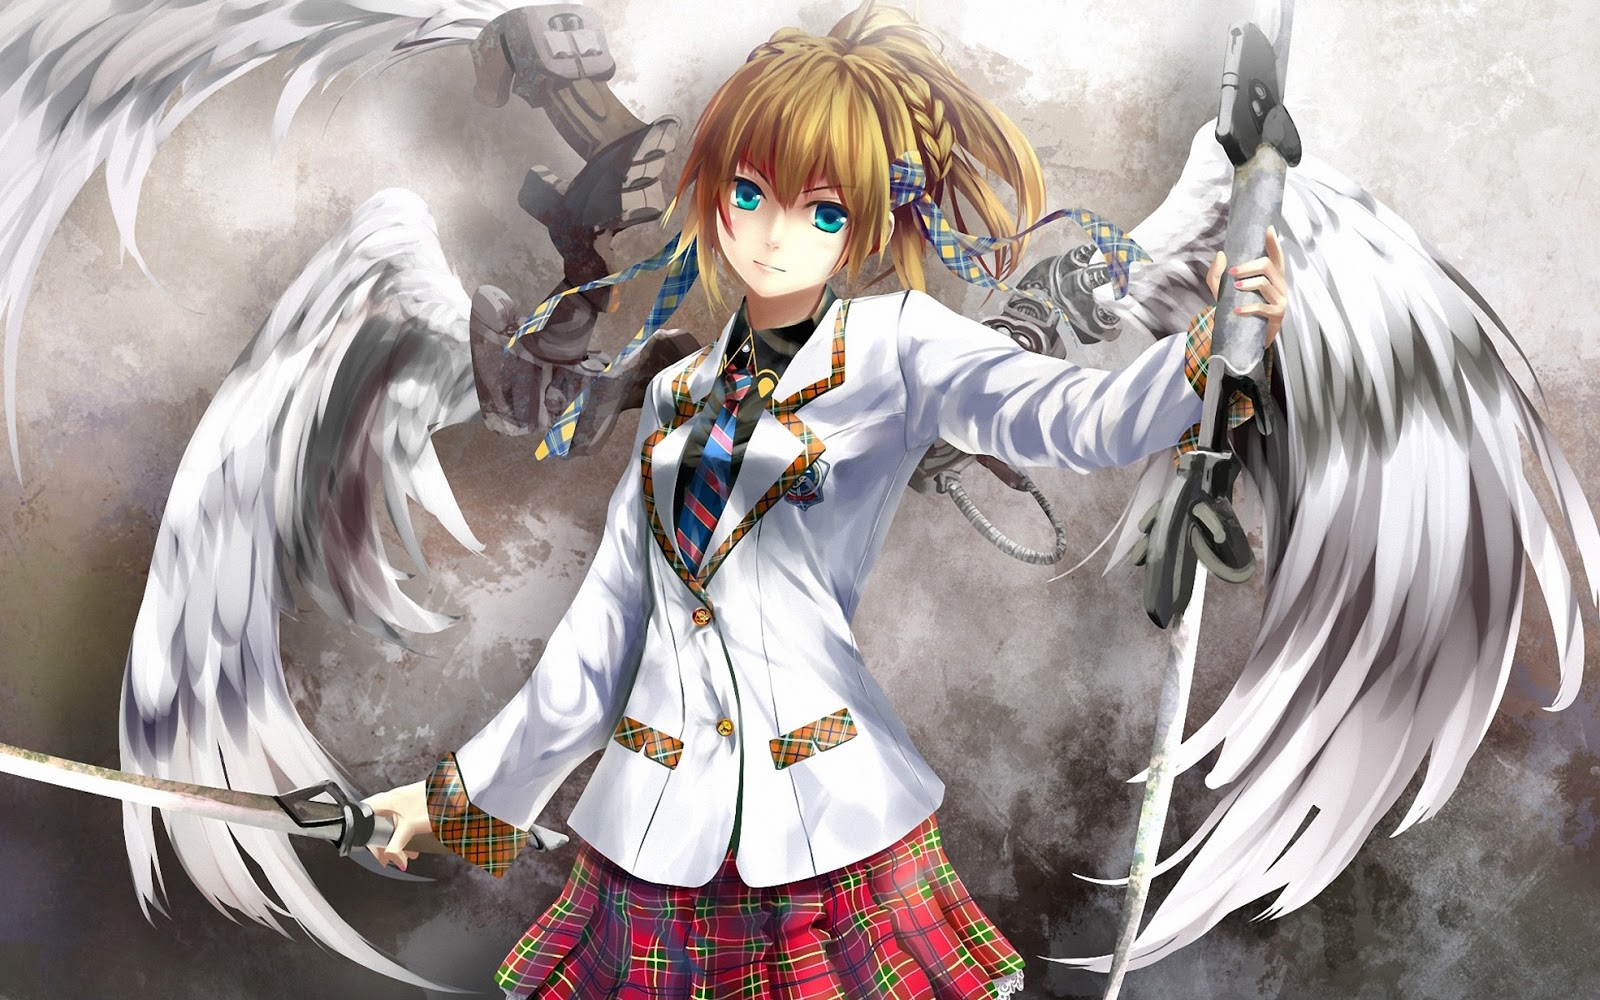 Angels Wings Blonde Hair Sword School Uniform Weapon Female Girl